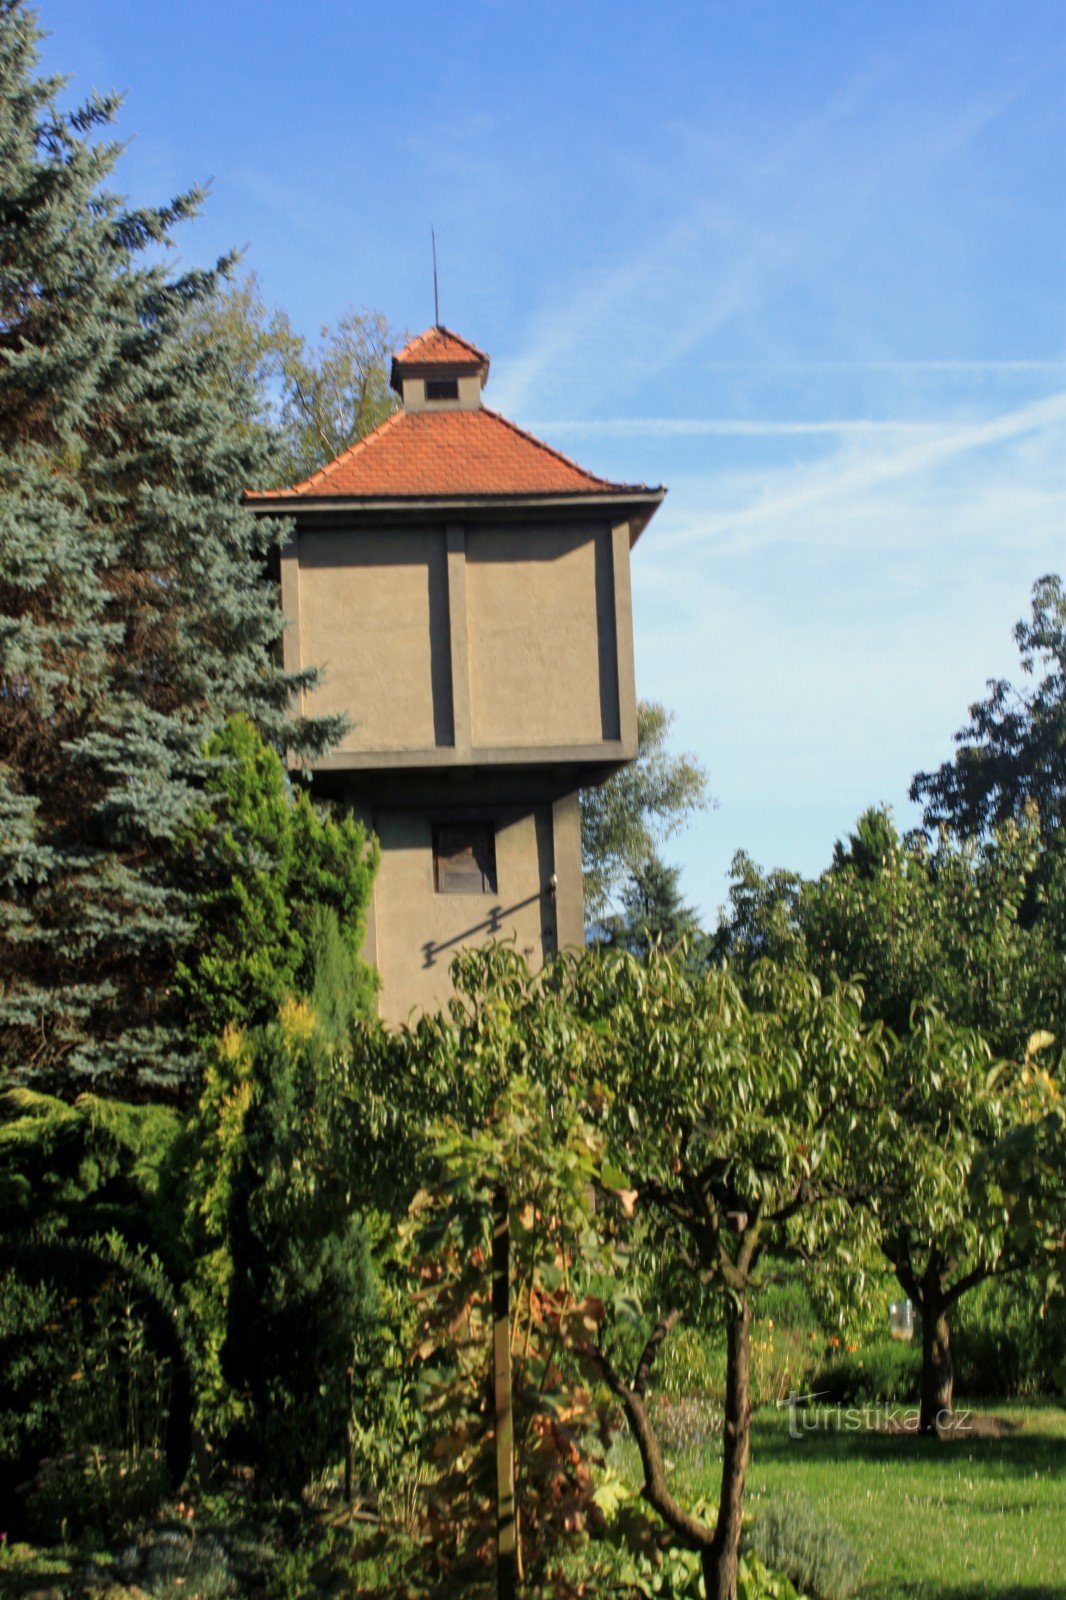 Bohosudovská water tower